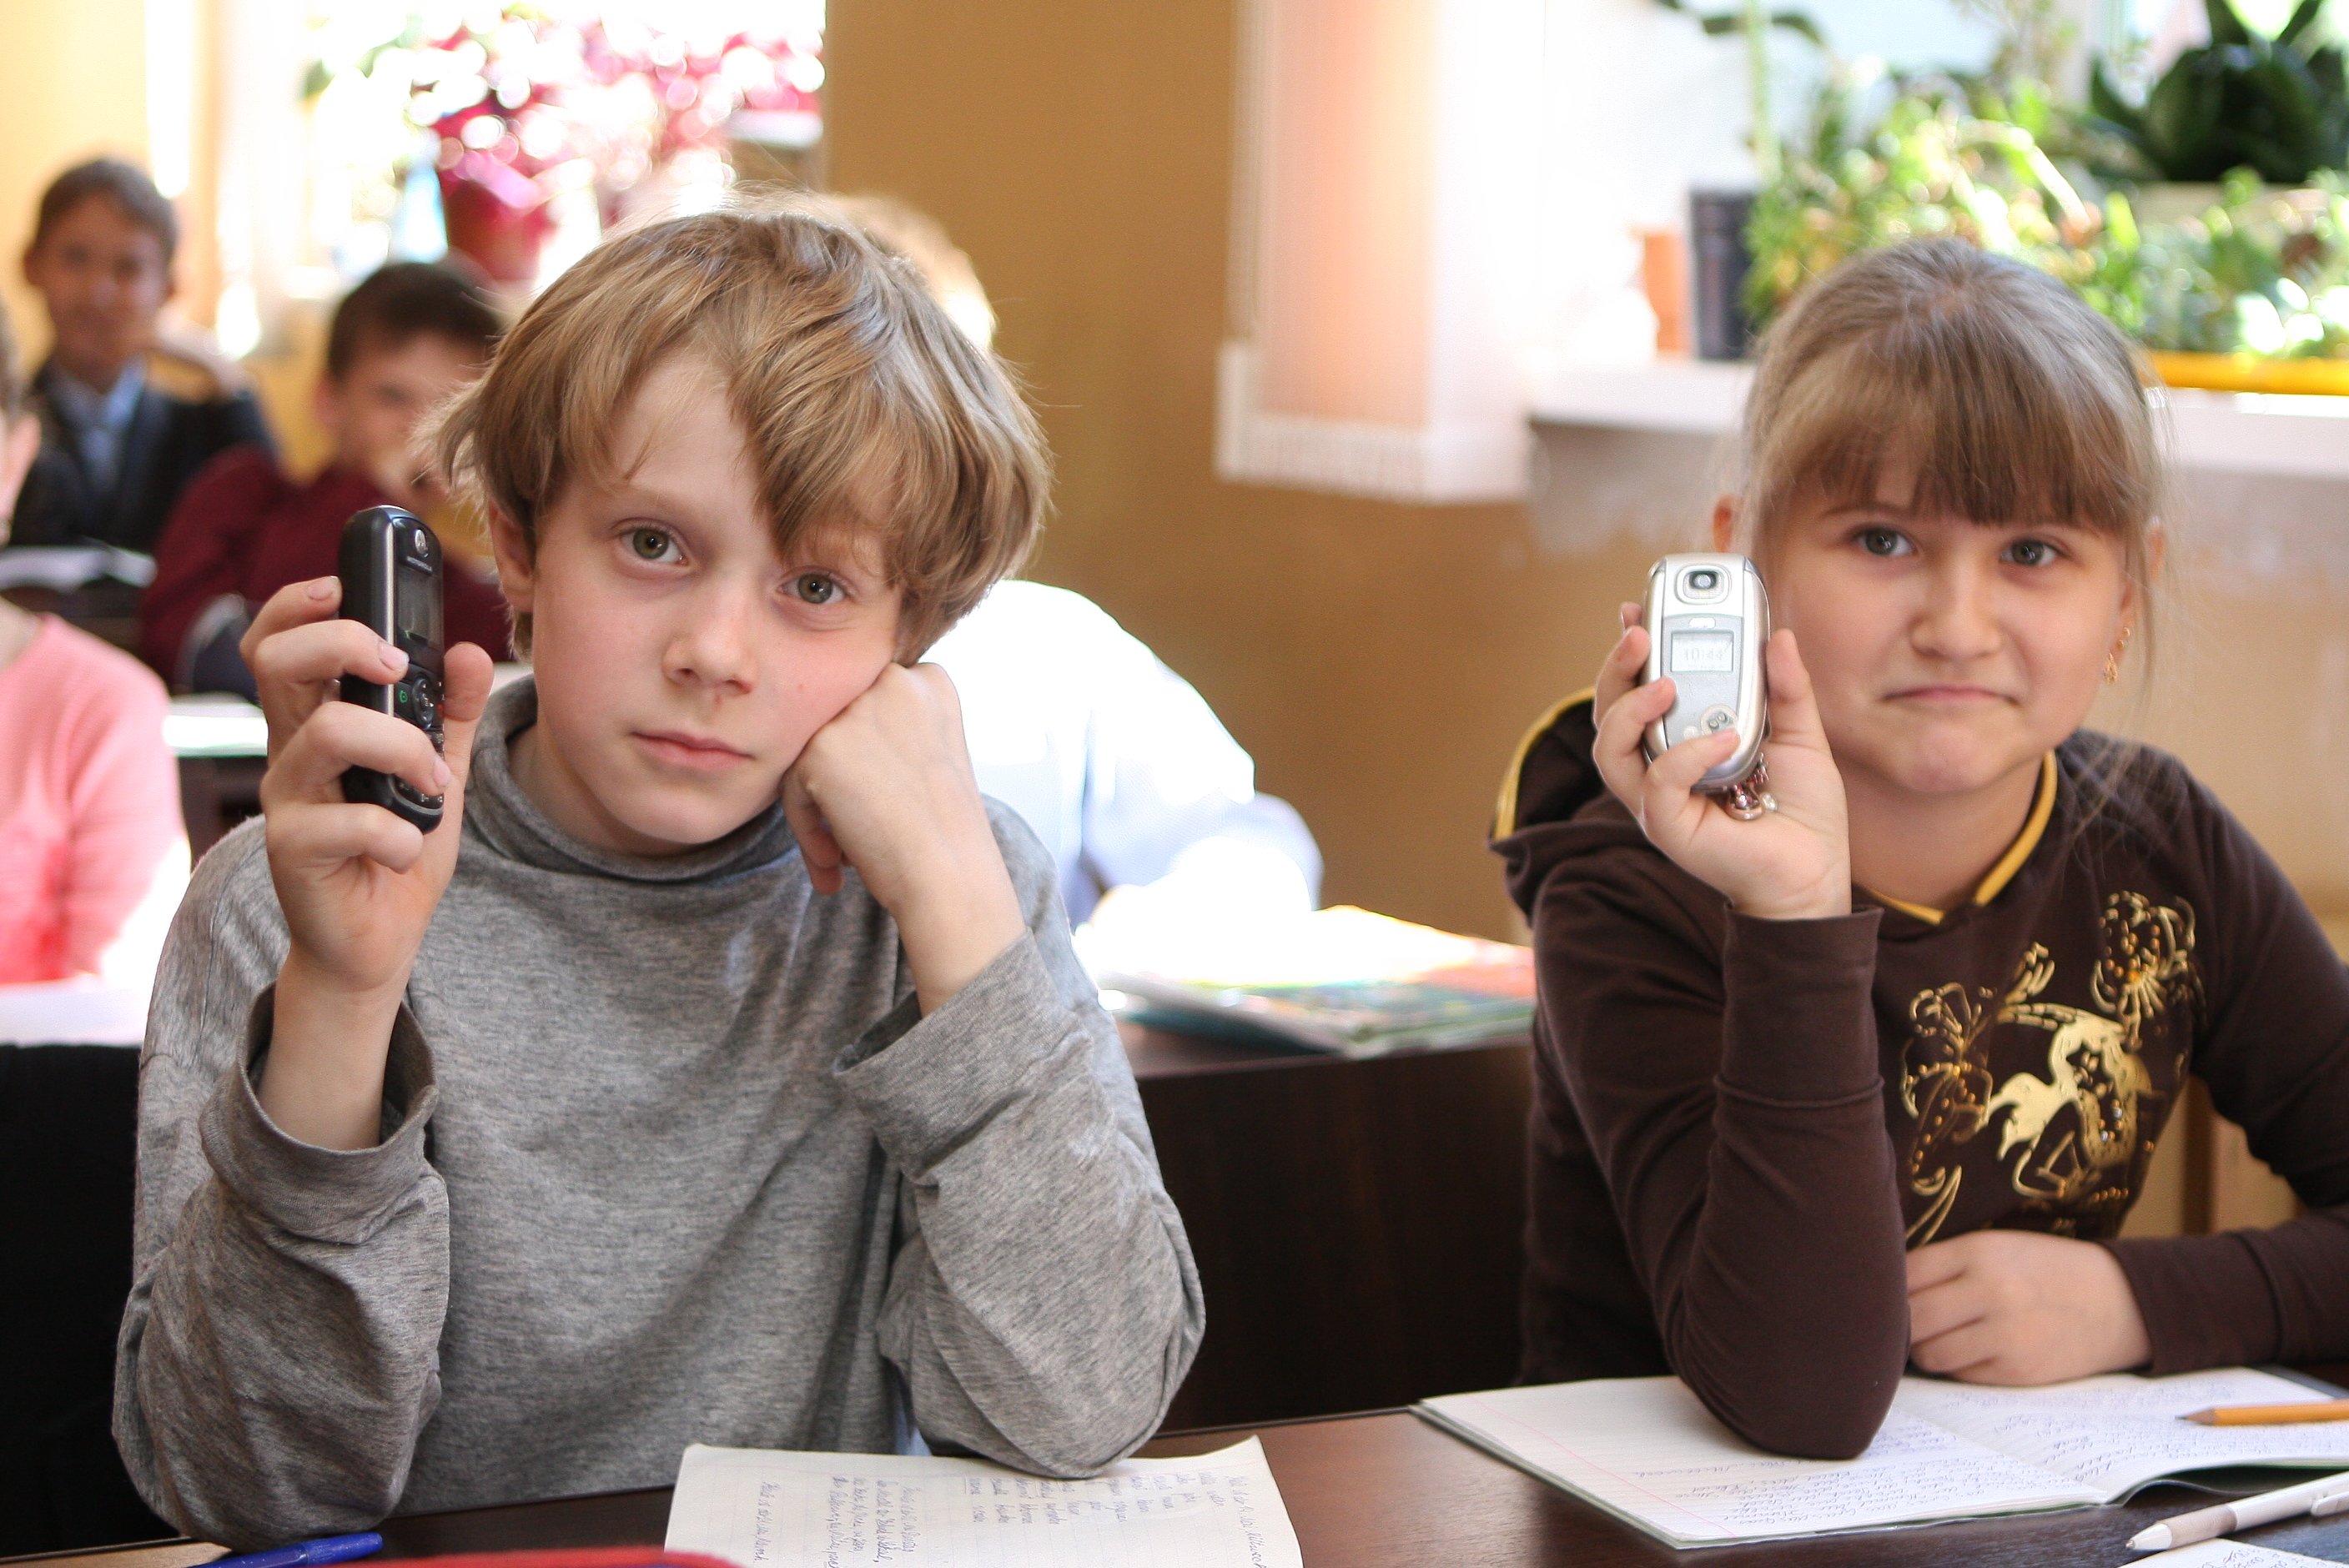 Ученики сдают телефоны. Школьник с мобильным телефоном. Дети с мобильниками в школе. Сотовые телефоны в школе. Два школьника.